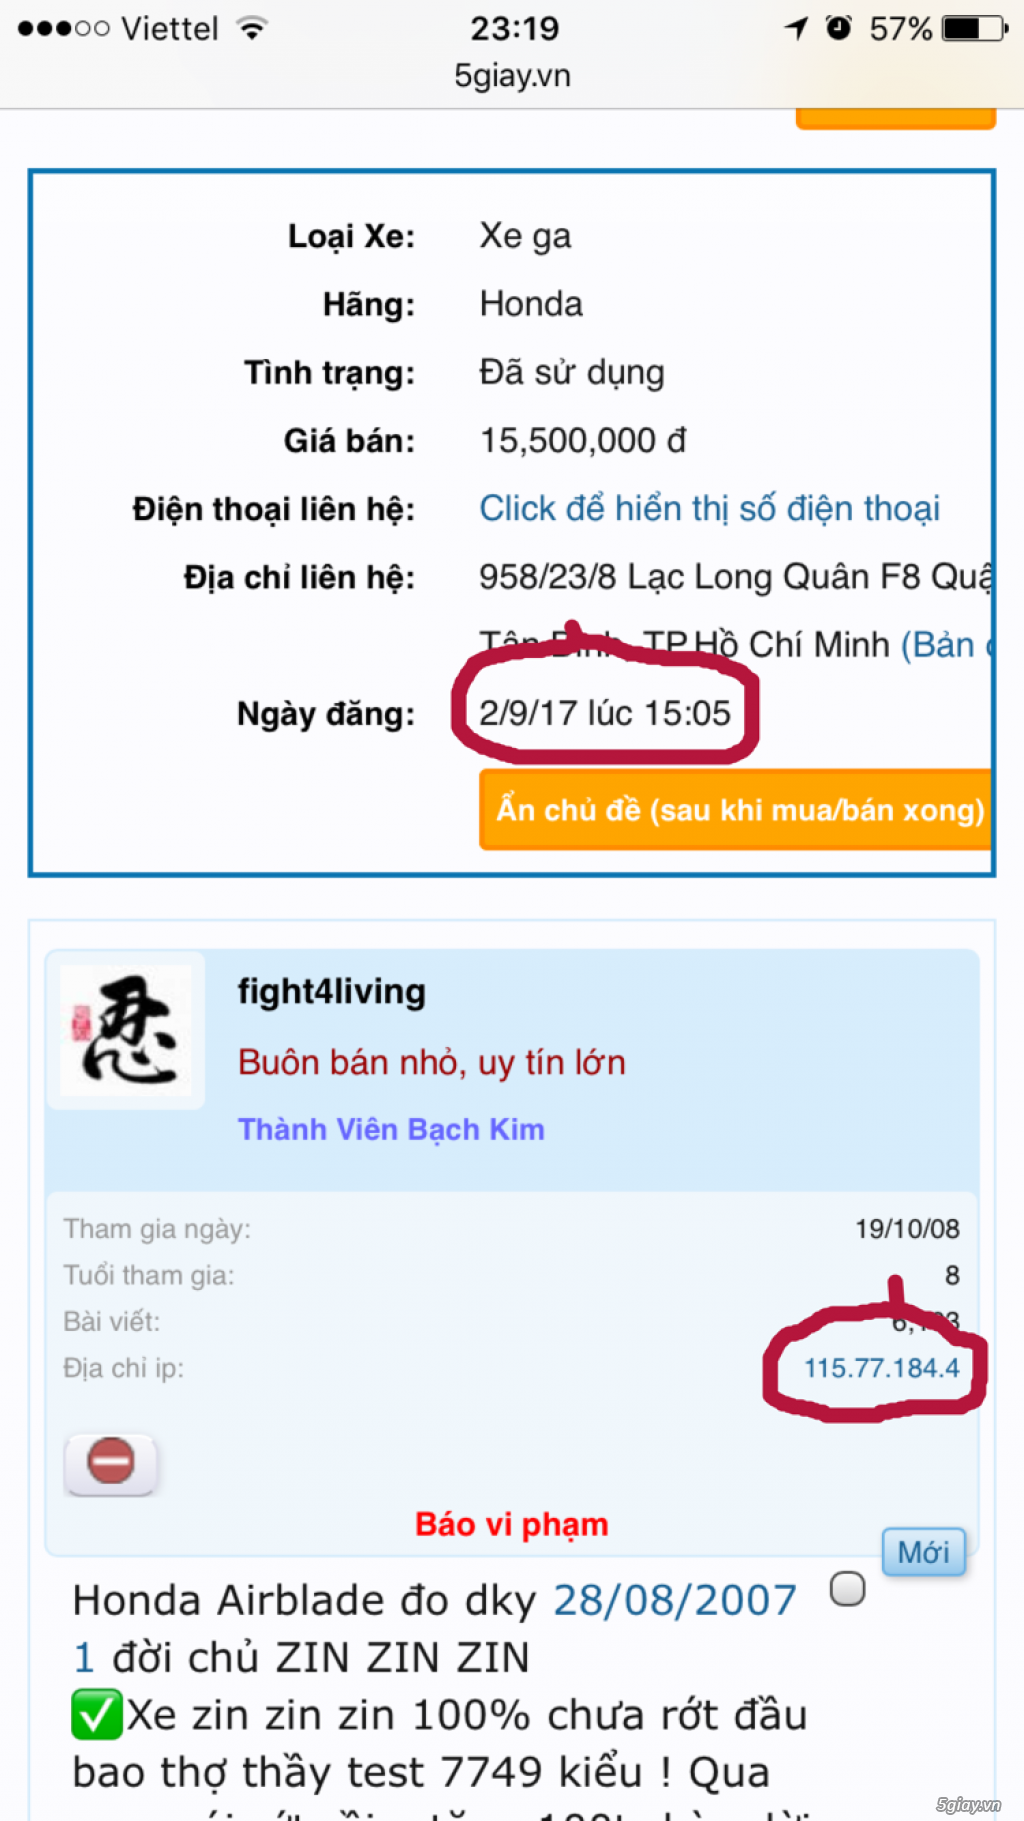 [ Đôn giá ] Banh sàn iphone 7 plus 32gb đen new 100% end 23h59p ngày 31/08/2017 - 6